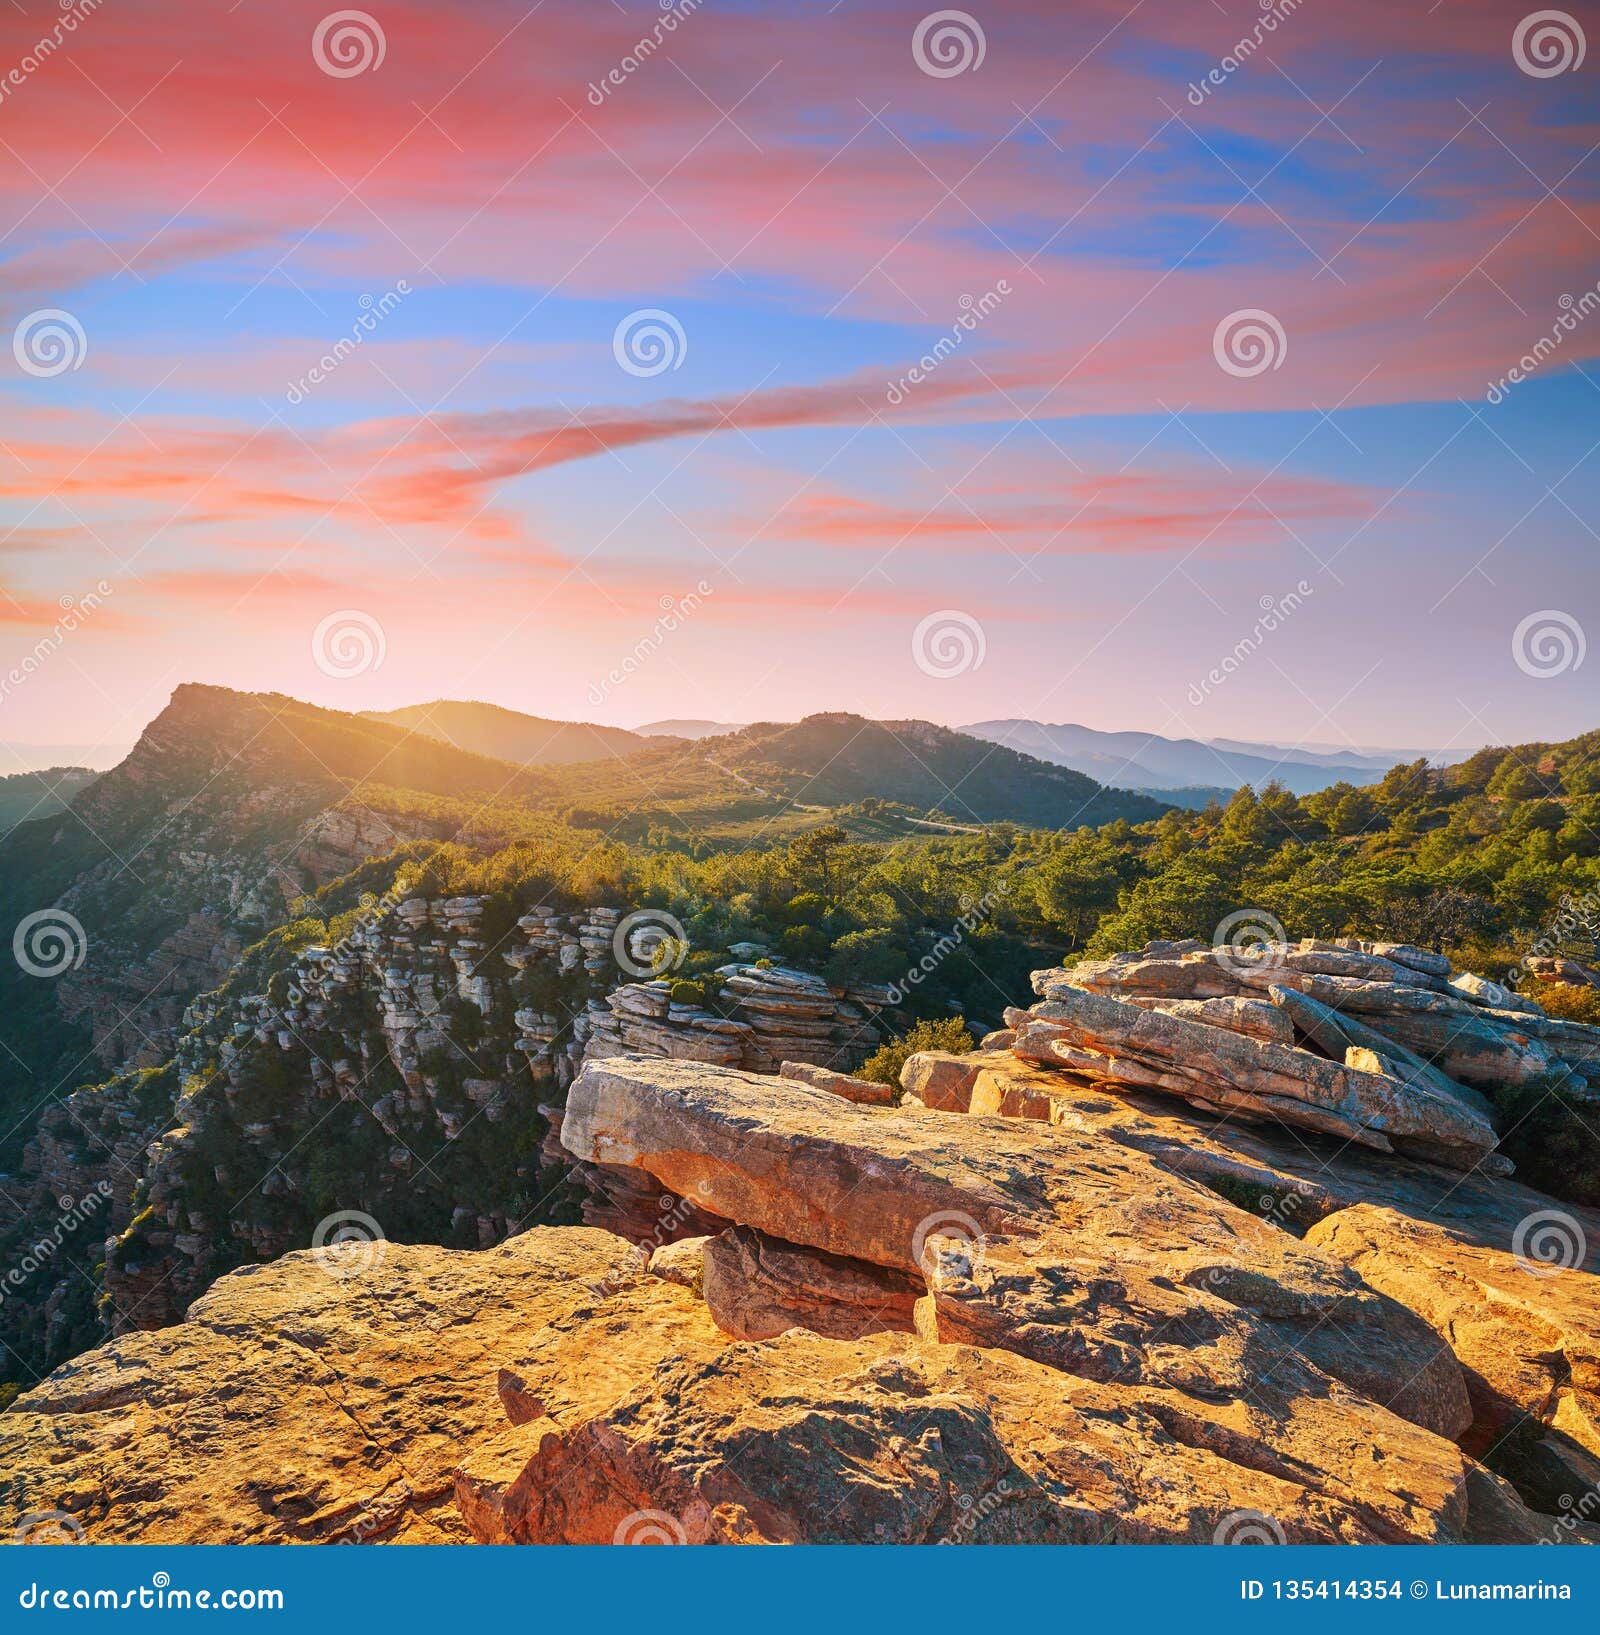 garbi peak sunset at calderona sierra valencia